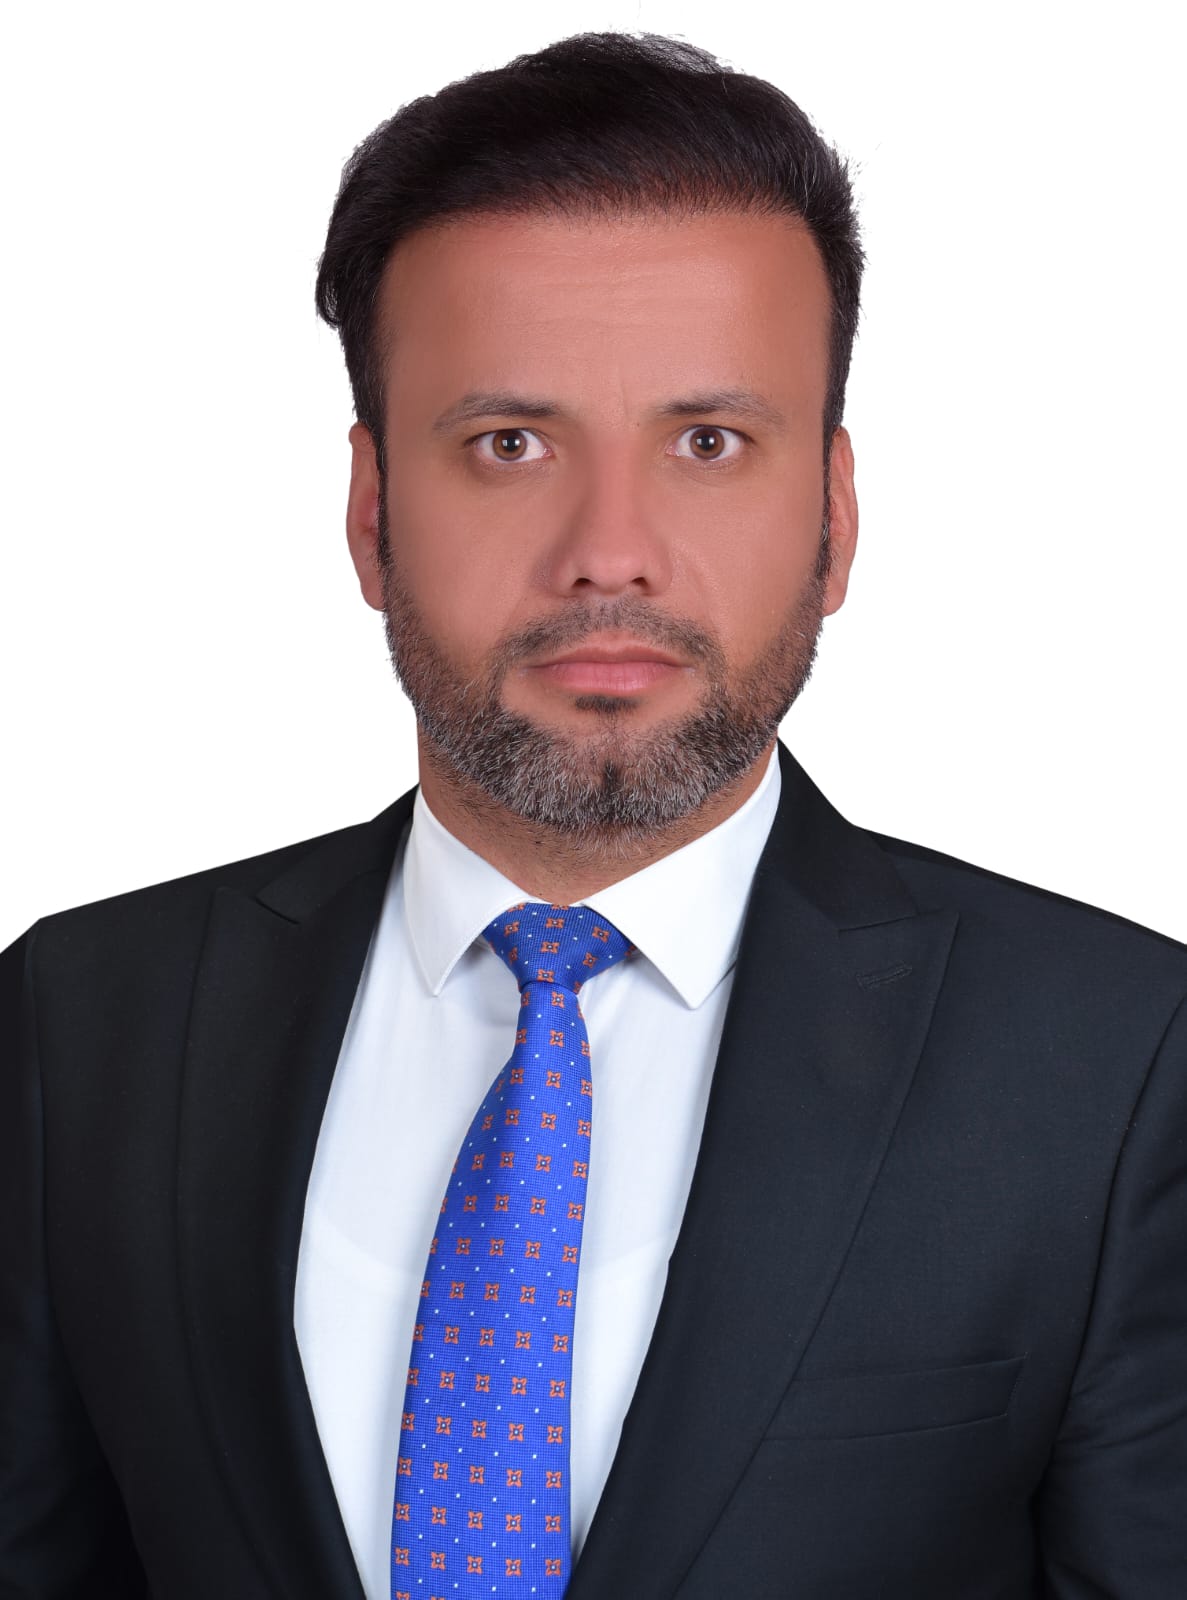 Raad Farhan Shahad Al-jubori